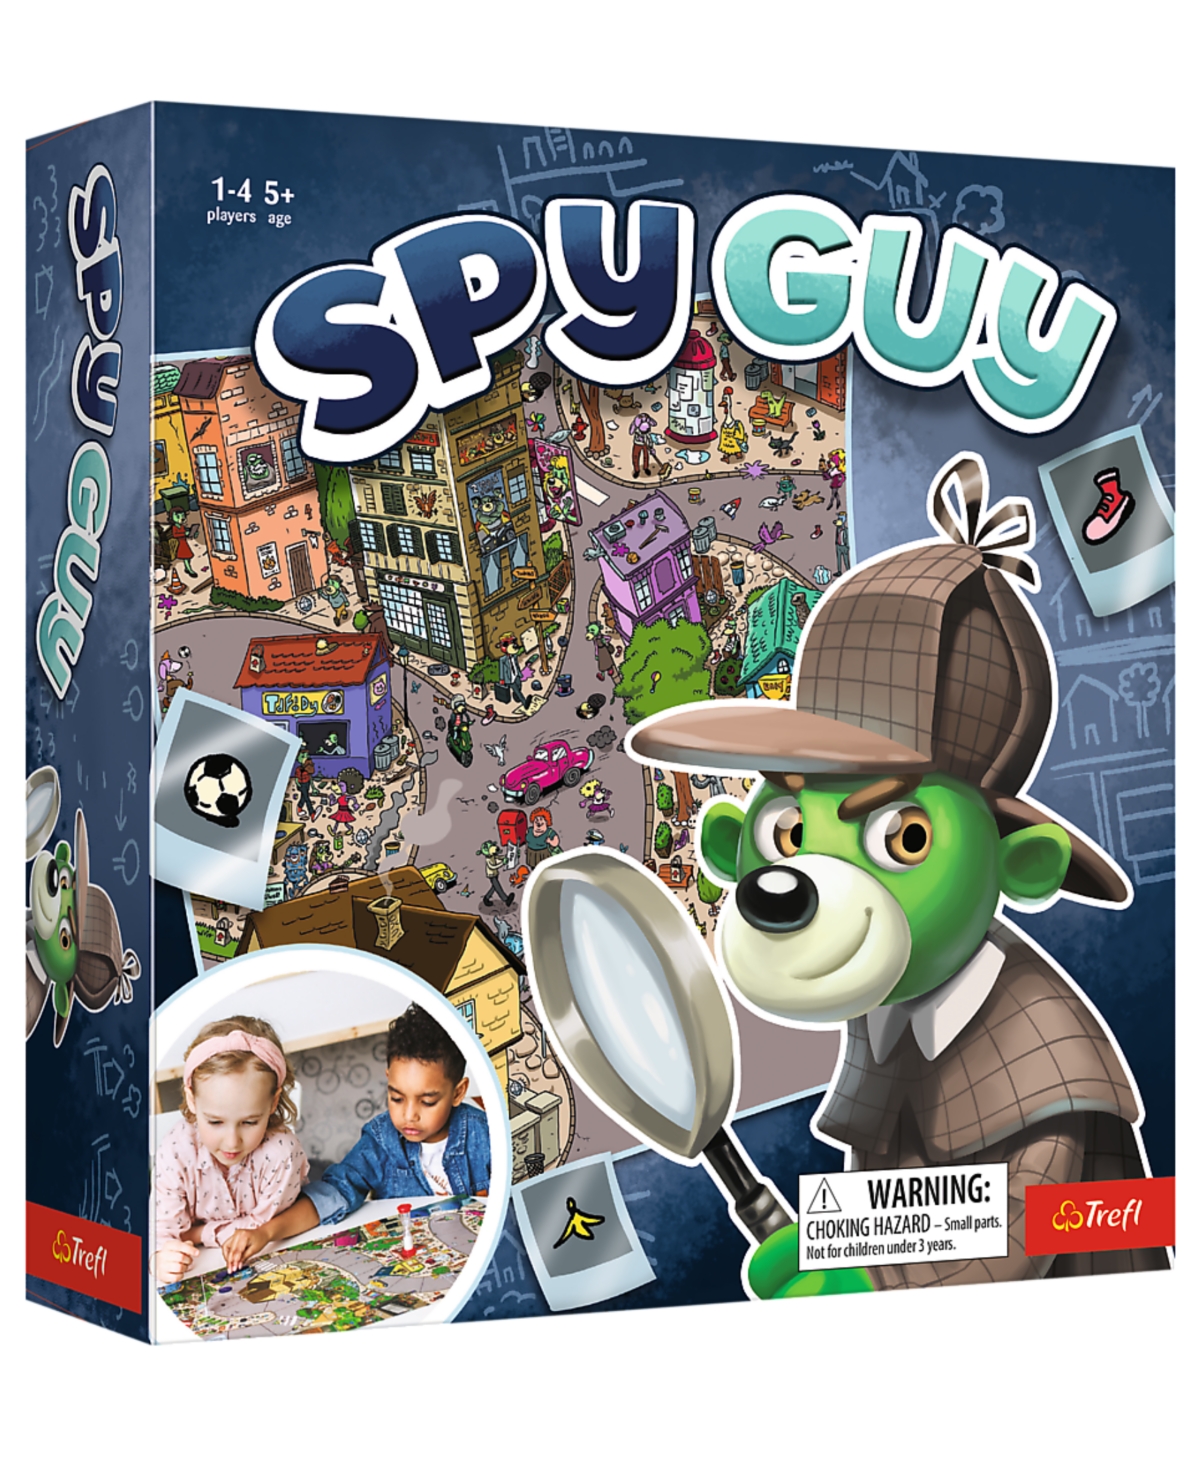 Trefl Kids' Games Spy Guy In Multi